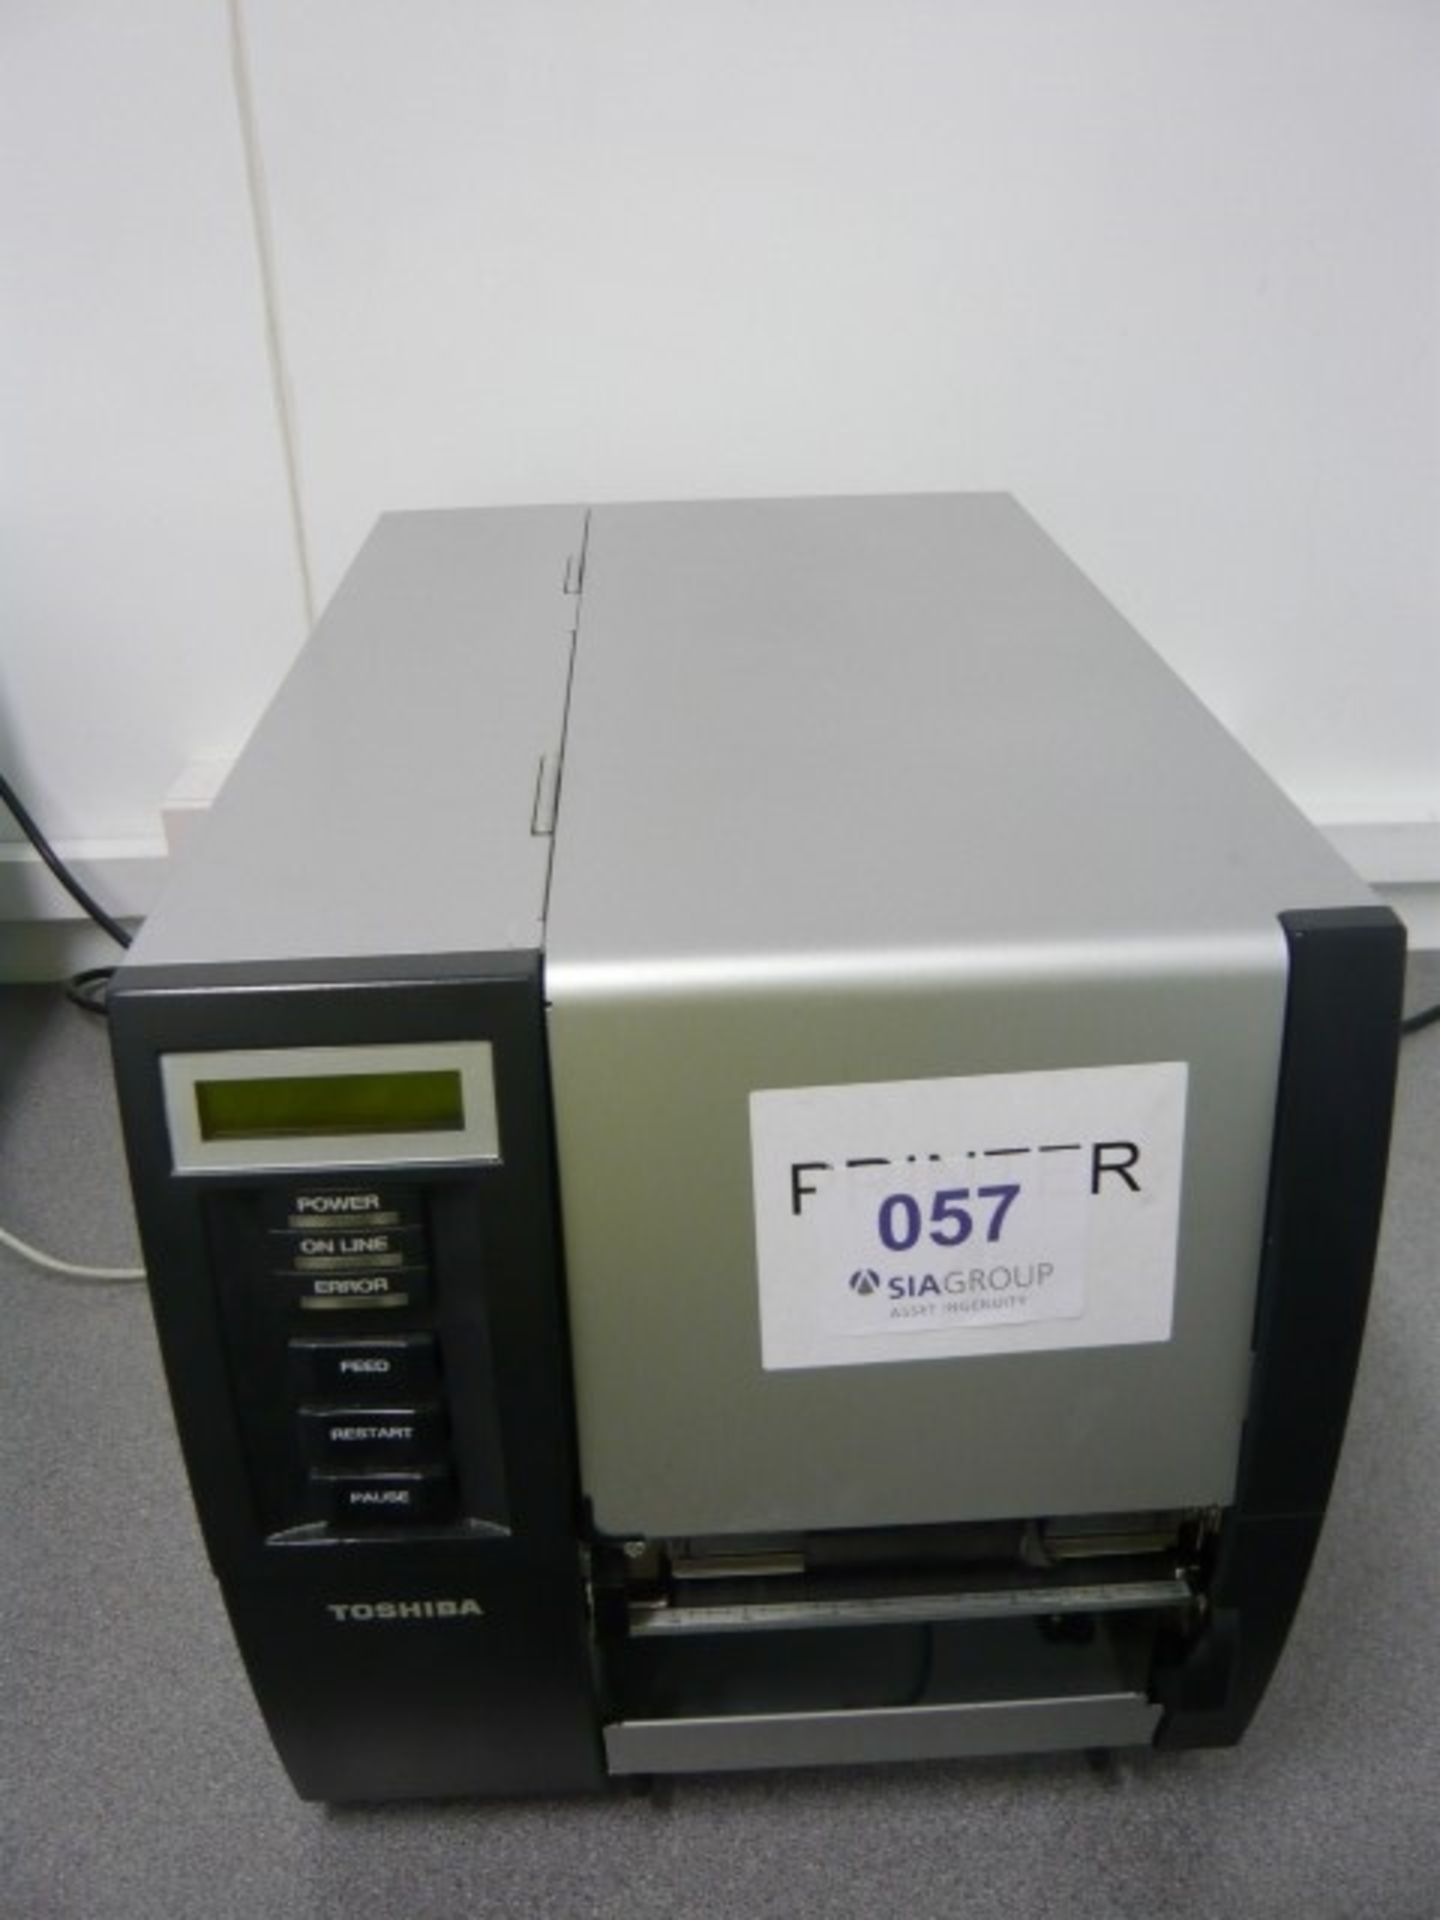 Toshiba Model B-SX5T-TS22-QM-R barcode label printer